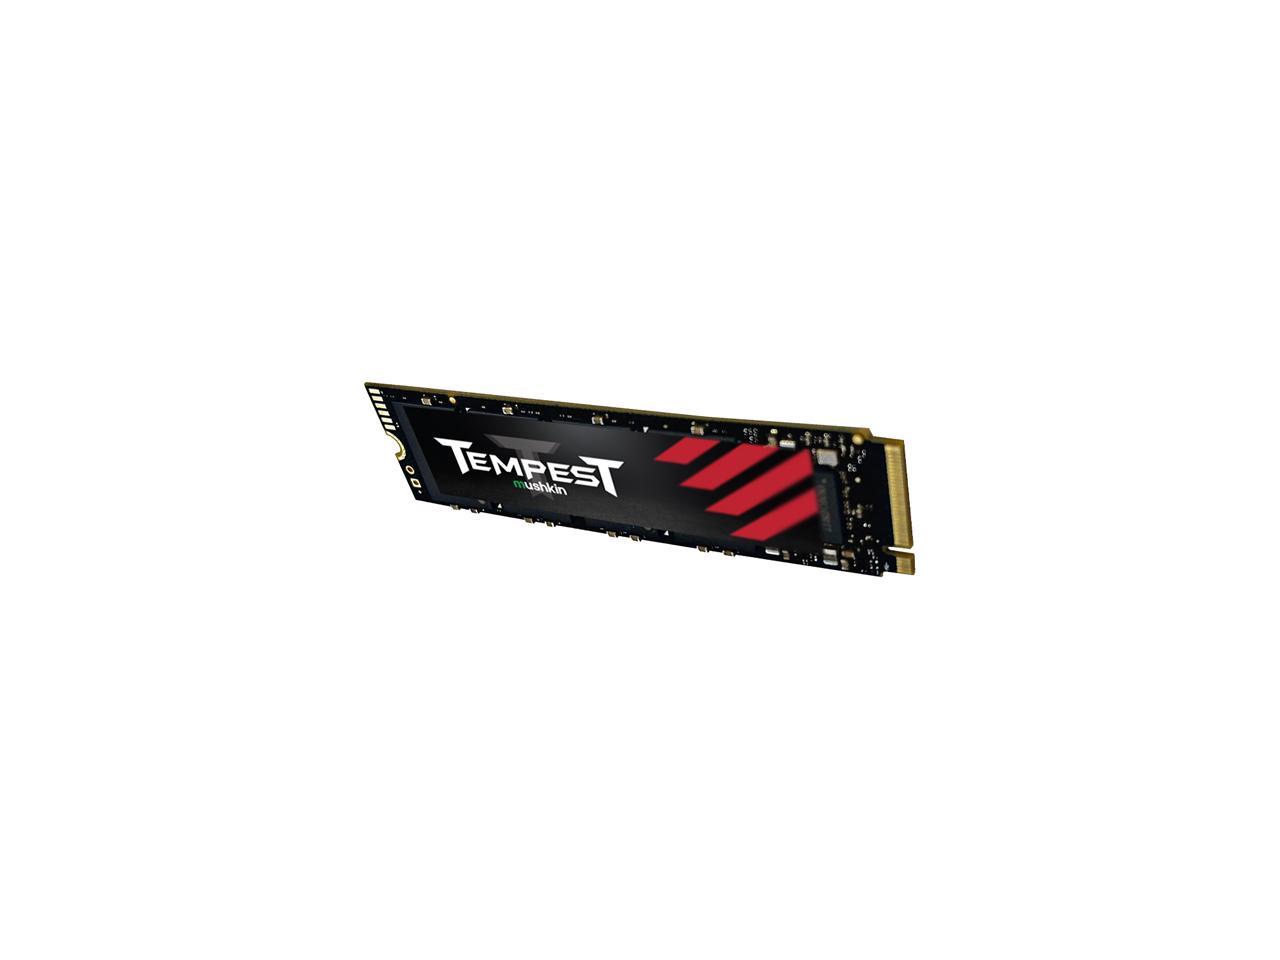 Mushkin Tempest 512GB PCIe Gen3 x4 NVMe 1.4 M.2 (2280) Internal SSD - Up to 3,300MBs - MKNSSDTS512GB-D8